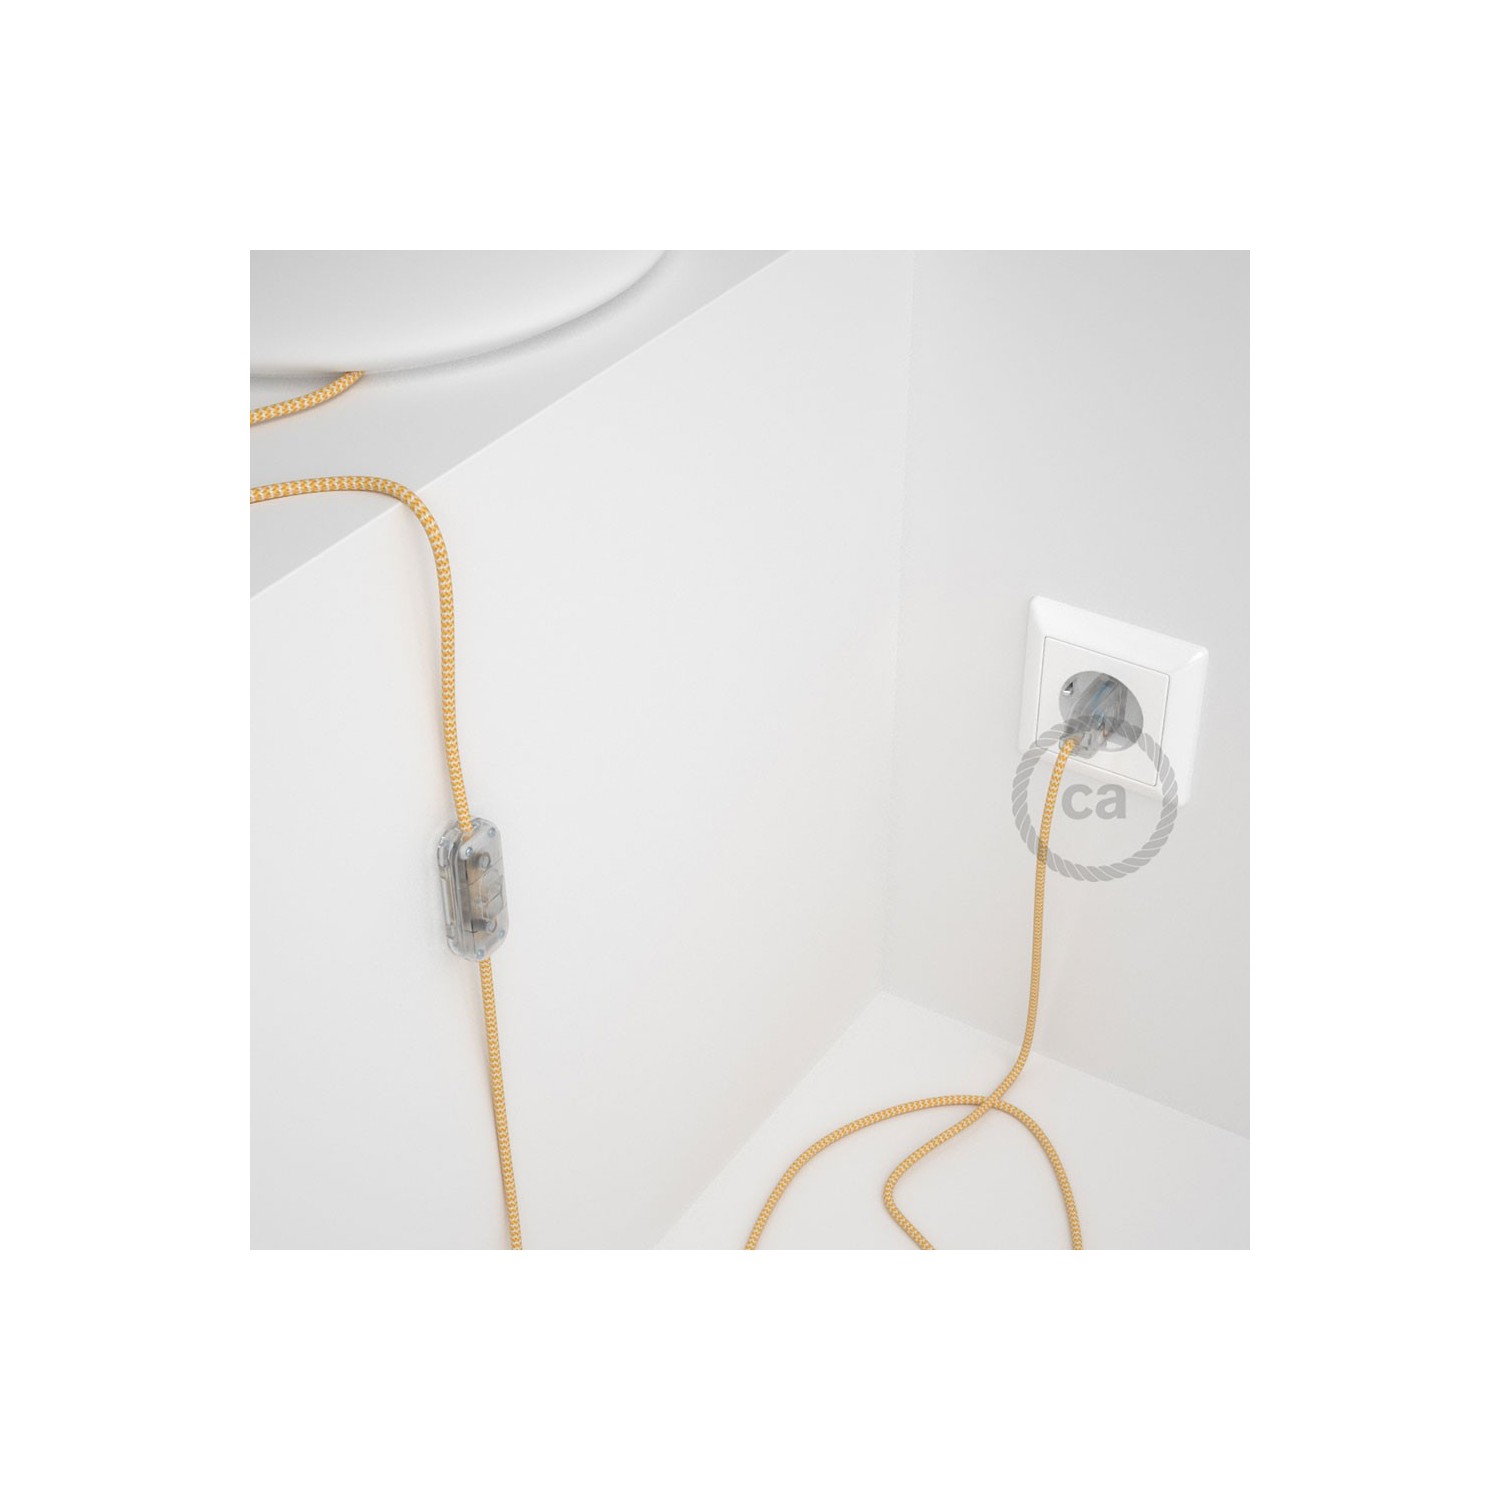 Cablaggio per lampada, cavo RZ10 Effetto Seta ZigZag Giallo 1,80 m. Scegli il colore dell'interruttore e della spina.